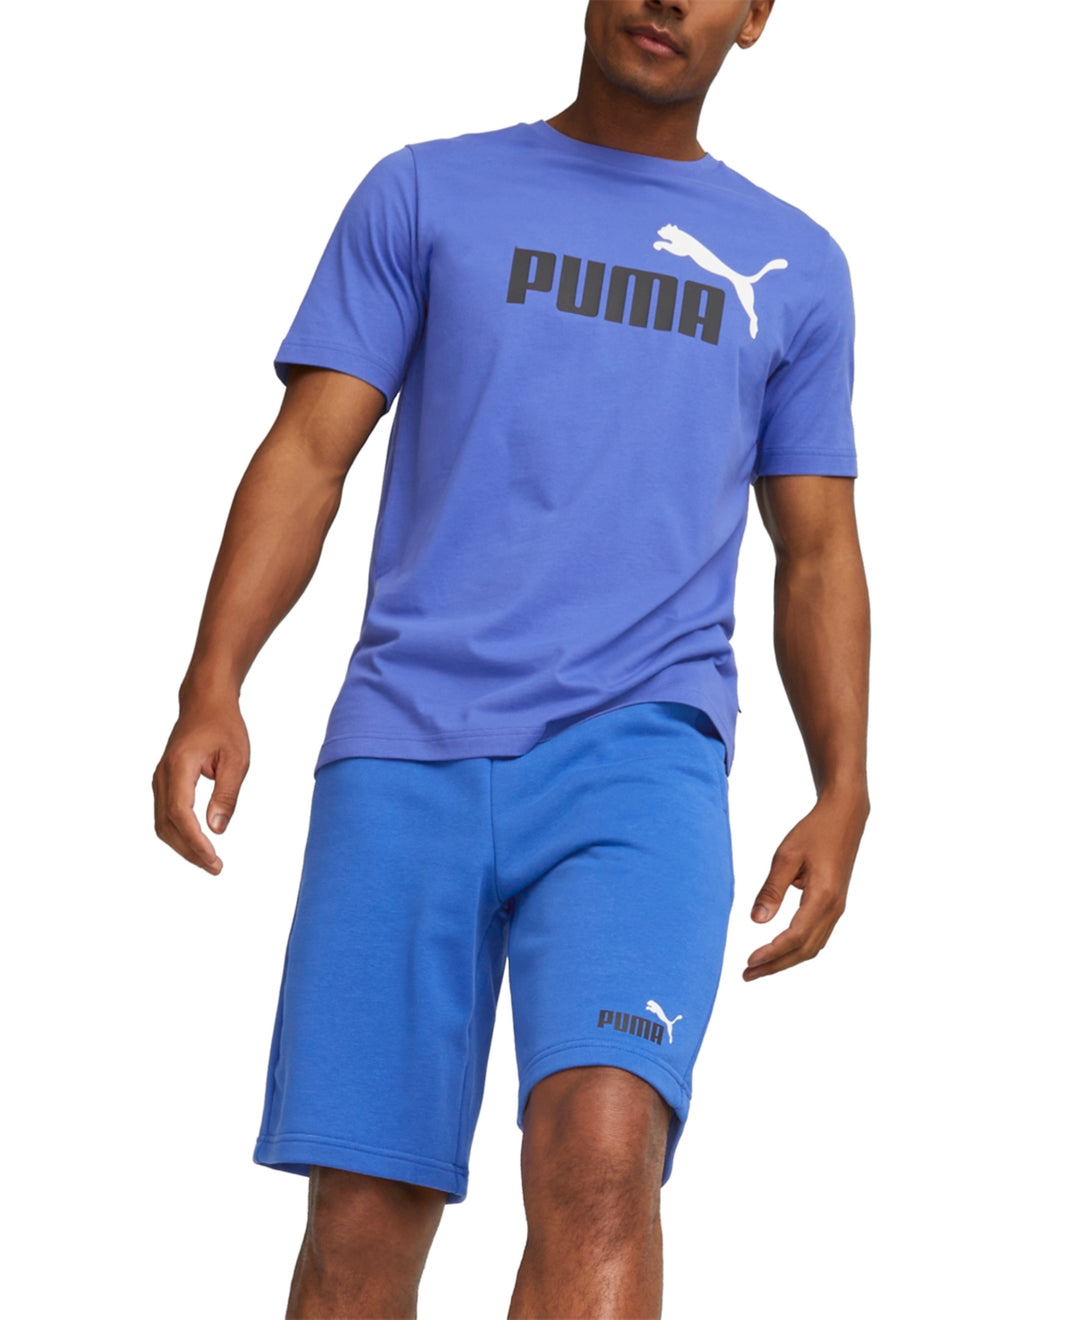 Puma Men's Essential Logo T-Shirt Blue Size Small